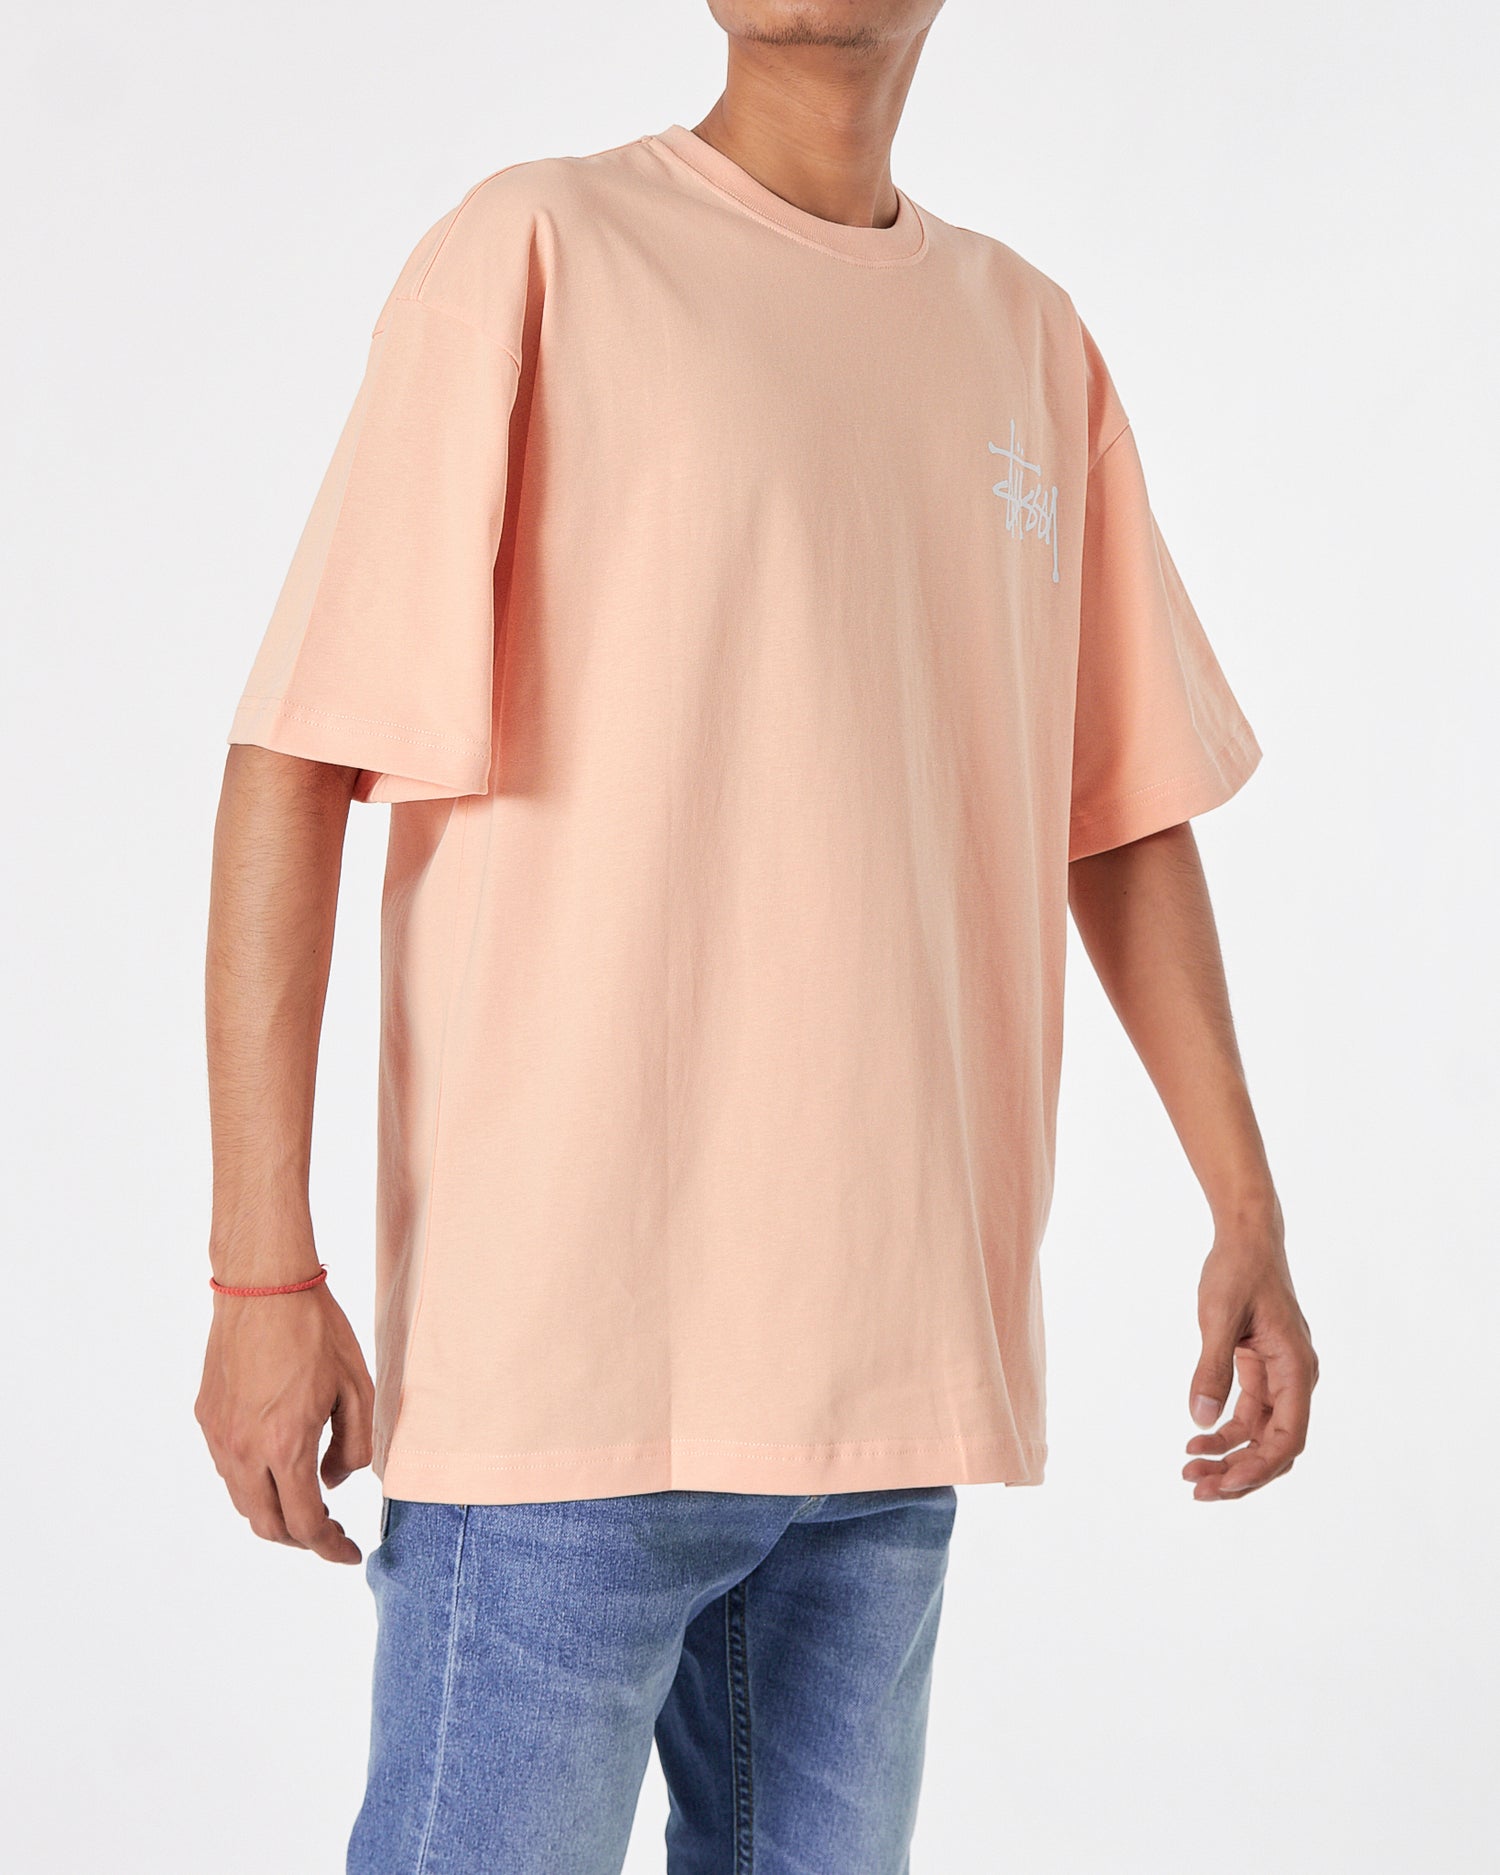 STU Back Logo Printed Men Orange T-Shirt 20.90